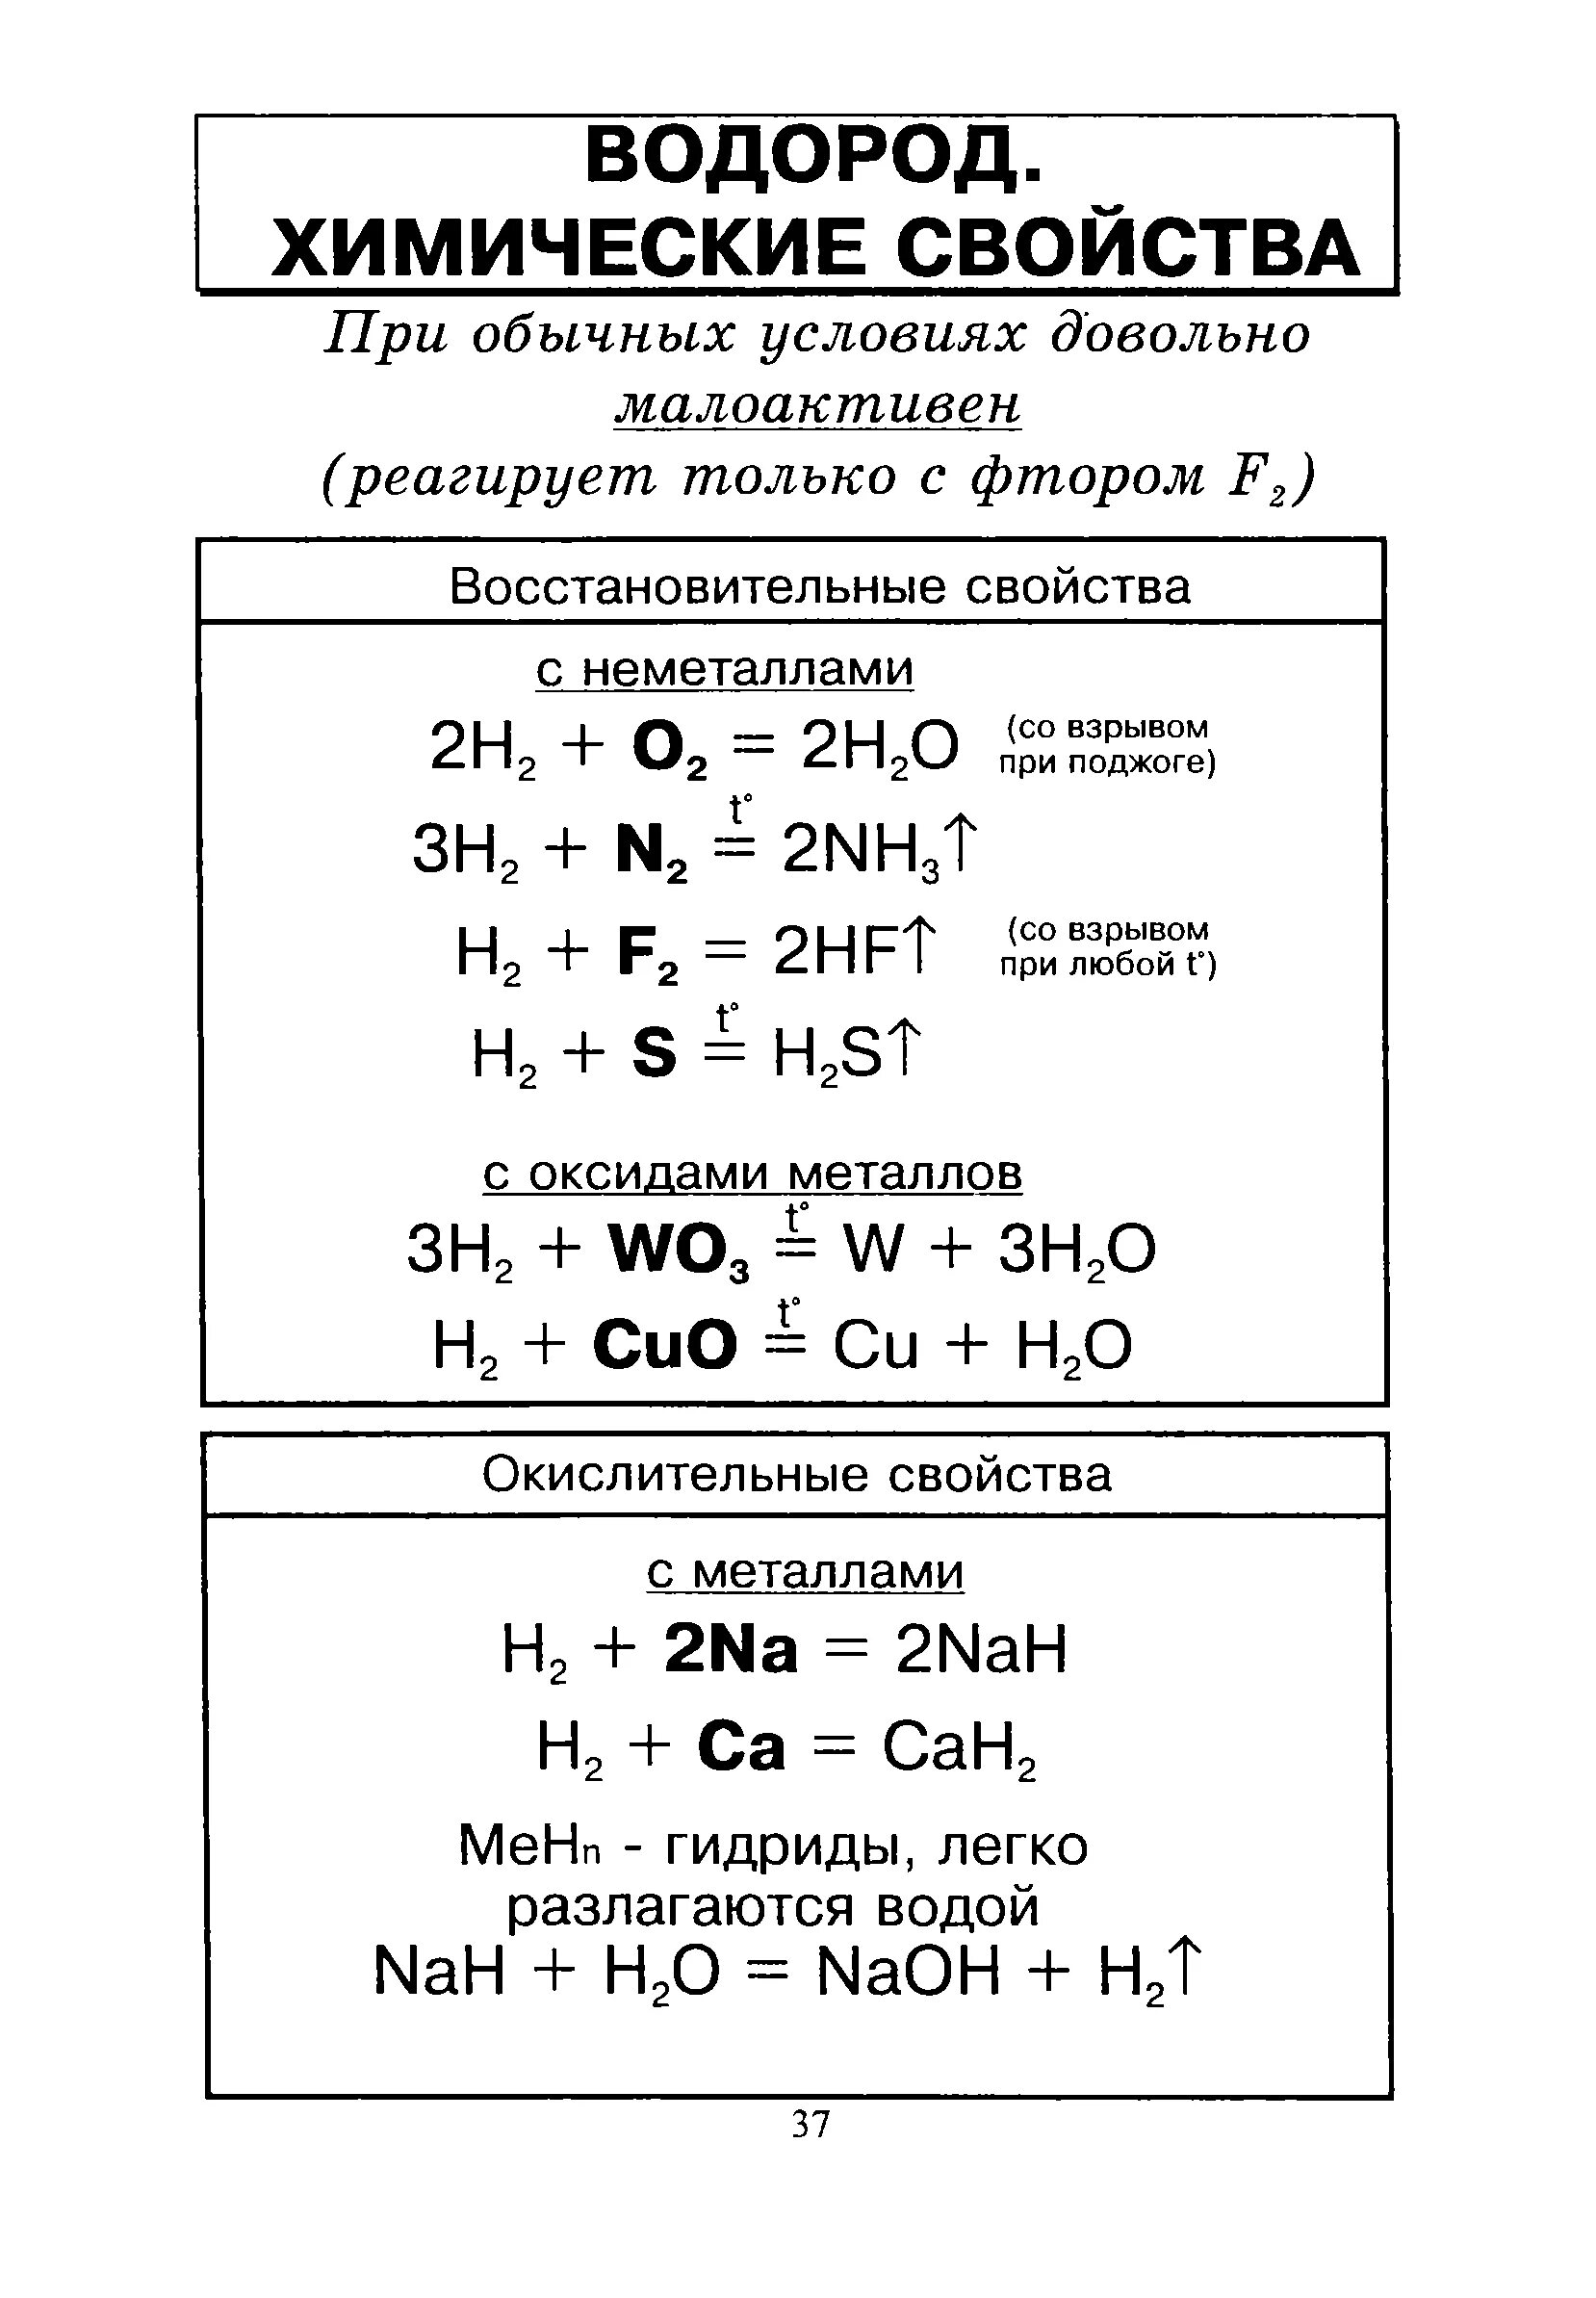 Водород получают реакцией формула. Химические свойства водорода 8 класс химия. Химические свойства водорода 9 класс химия. Химические свойства водорода реакции. Характеристика водорода химические свойства.